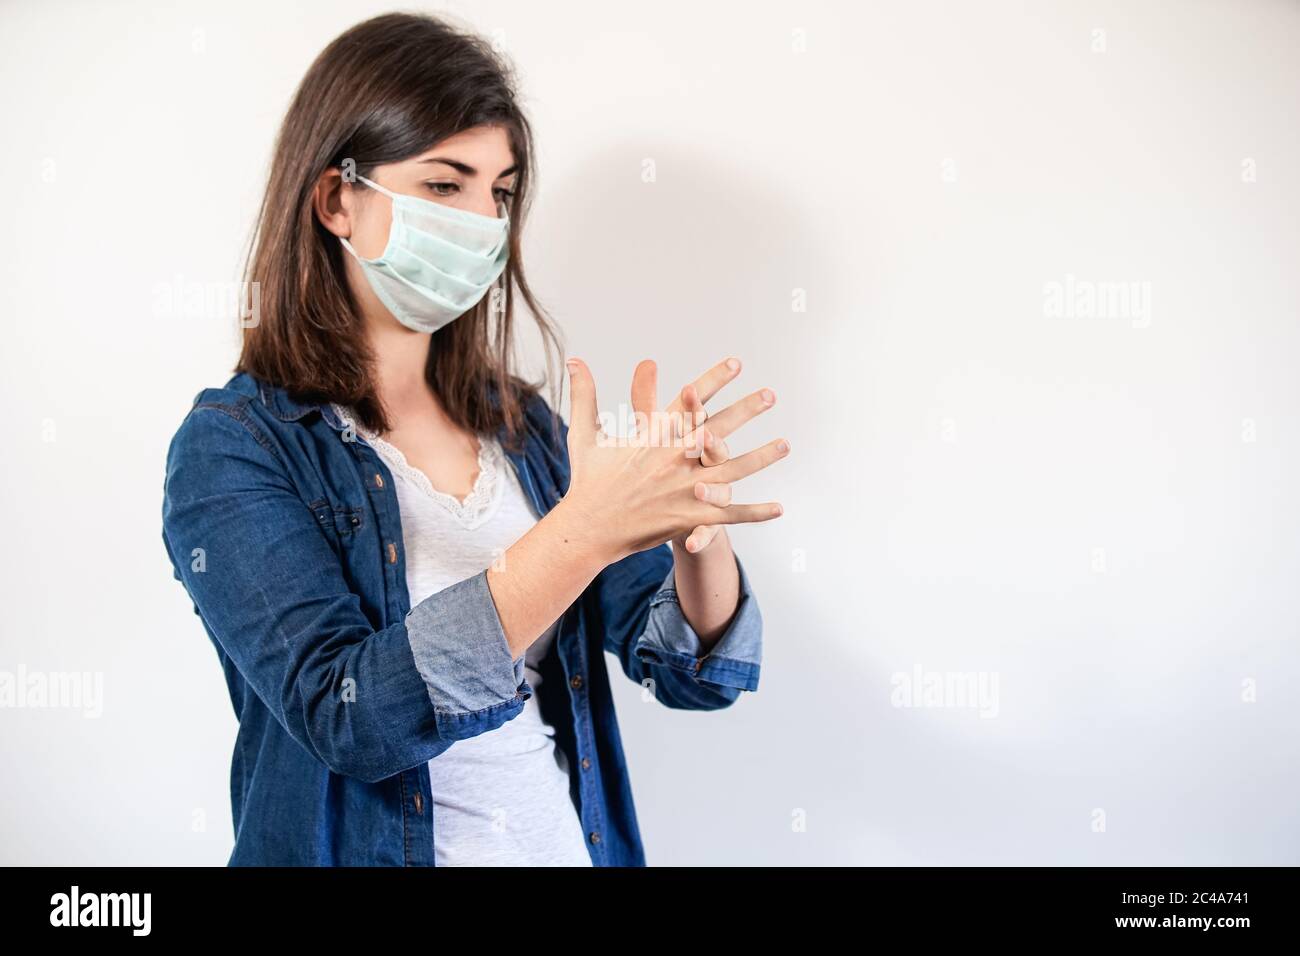 Donna con maschera di protezione medica che mette su antisettico per disinfettare le mani Foto Stock